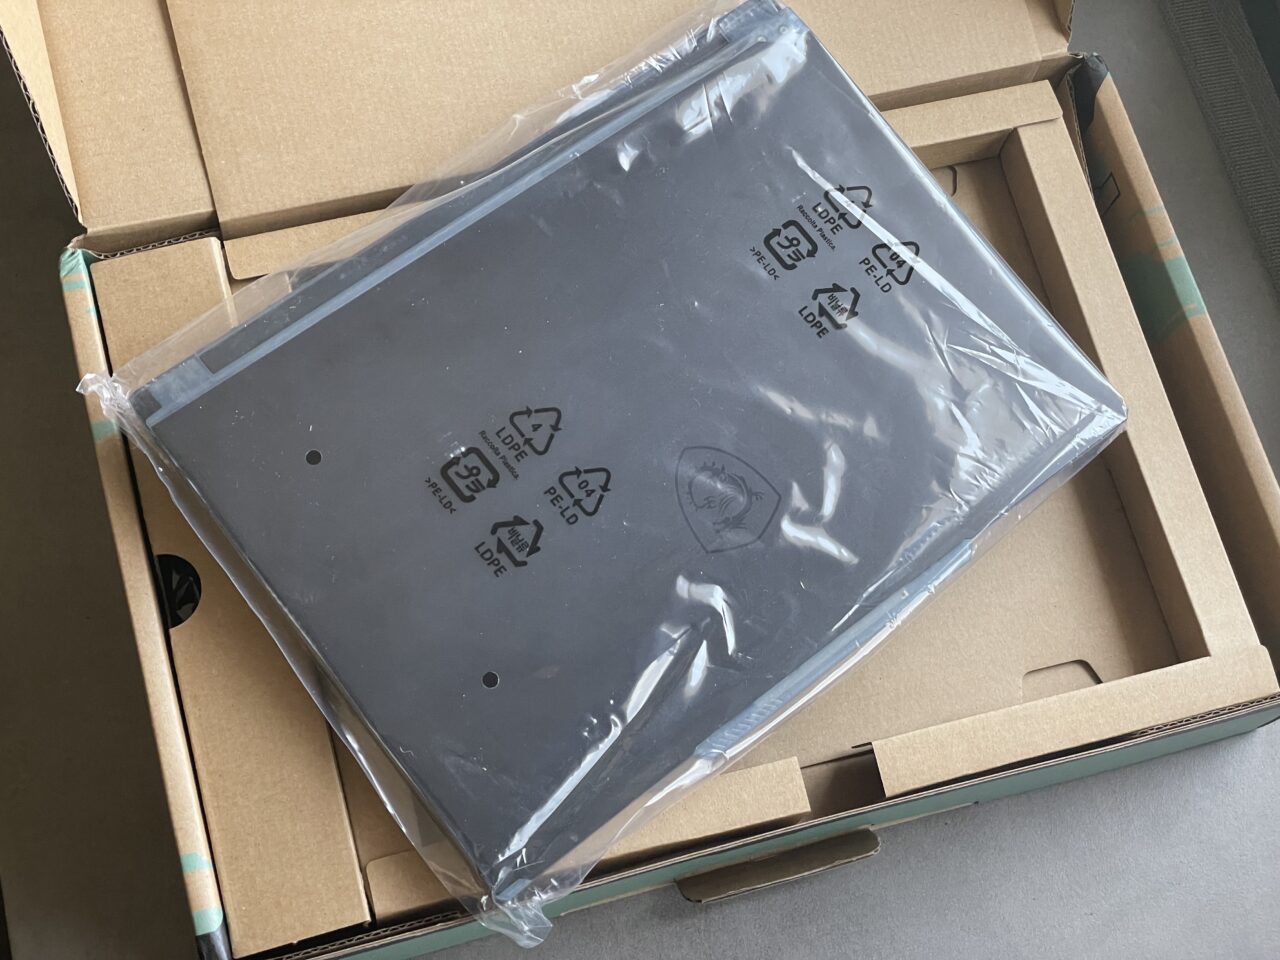 Laptop opakowany w folię ochronną umieszczony w kartonowym pudełku.